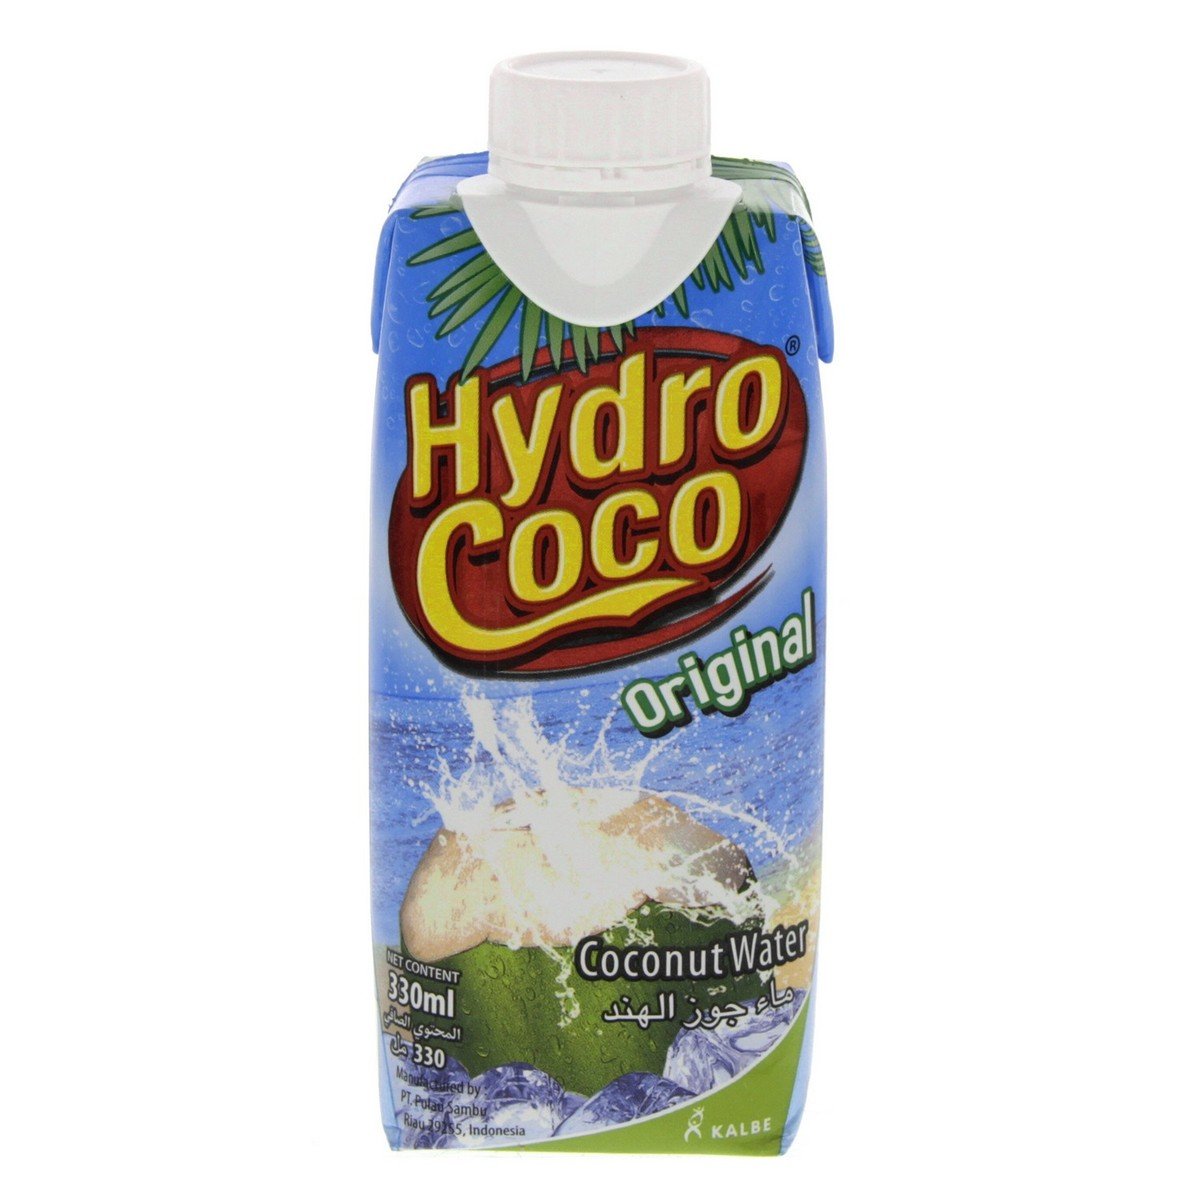 Hydro Coco Original Coconut Water 330 ml